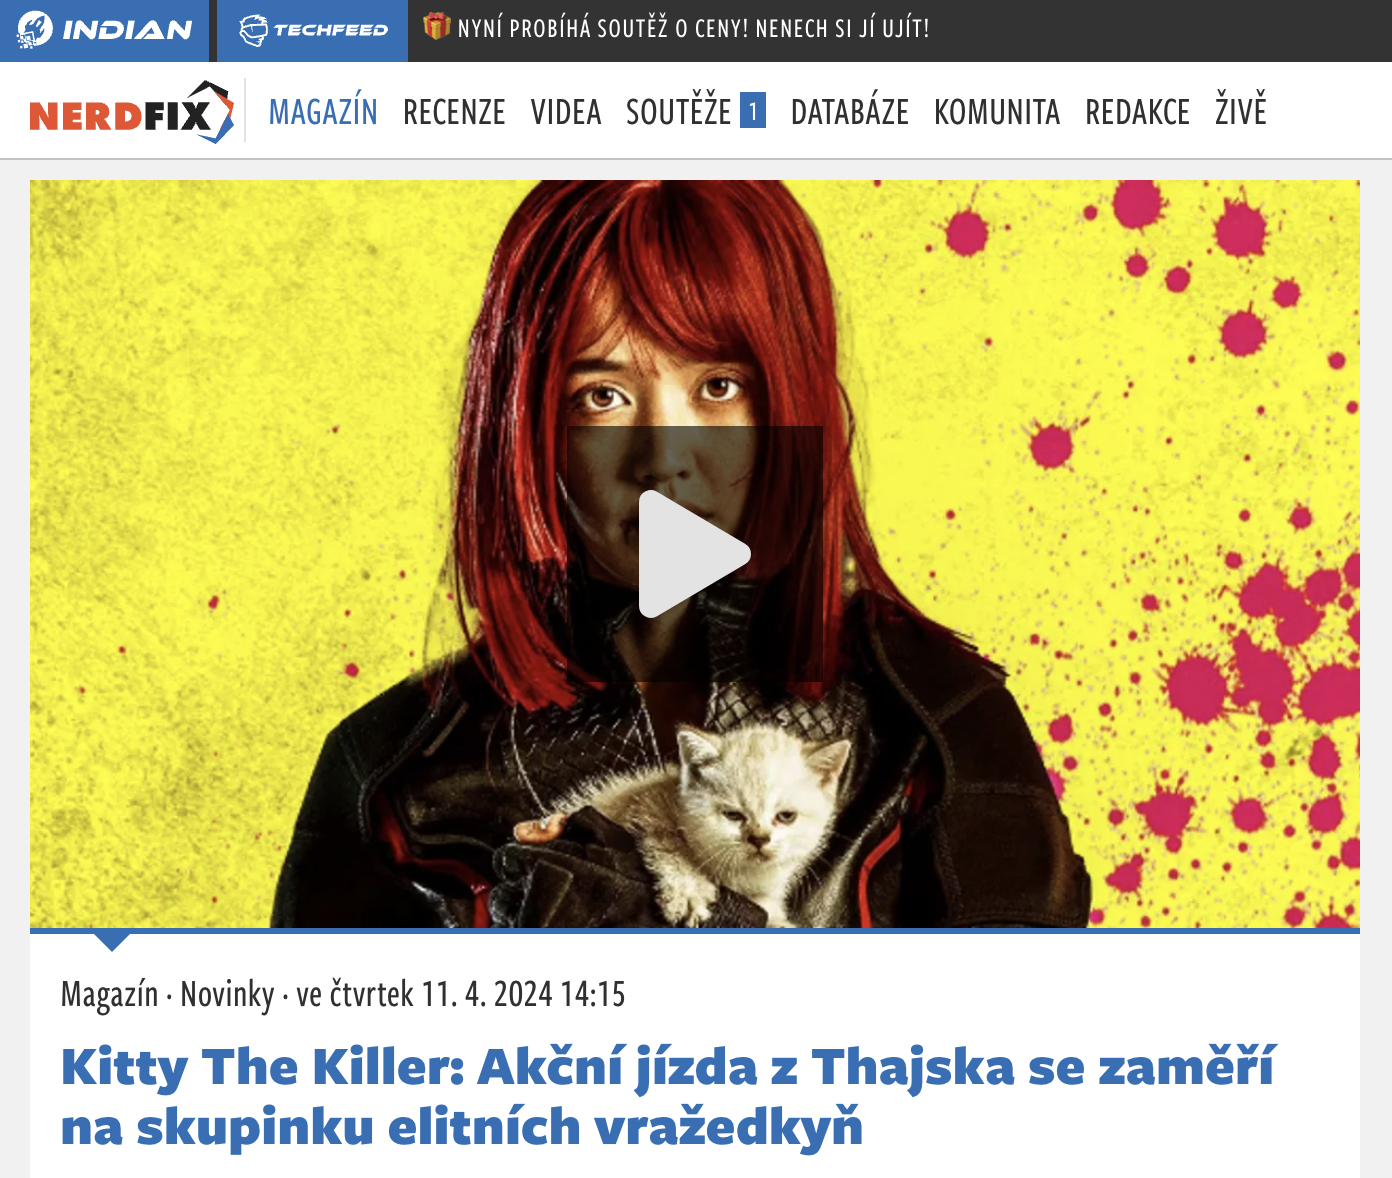 Kitty The Killer: Akční jízda z Thajska se zaměří na skupinku elitních vražedkyň